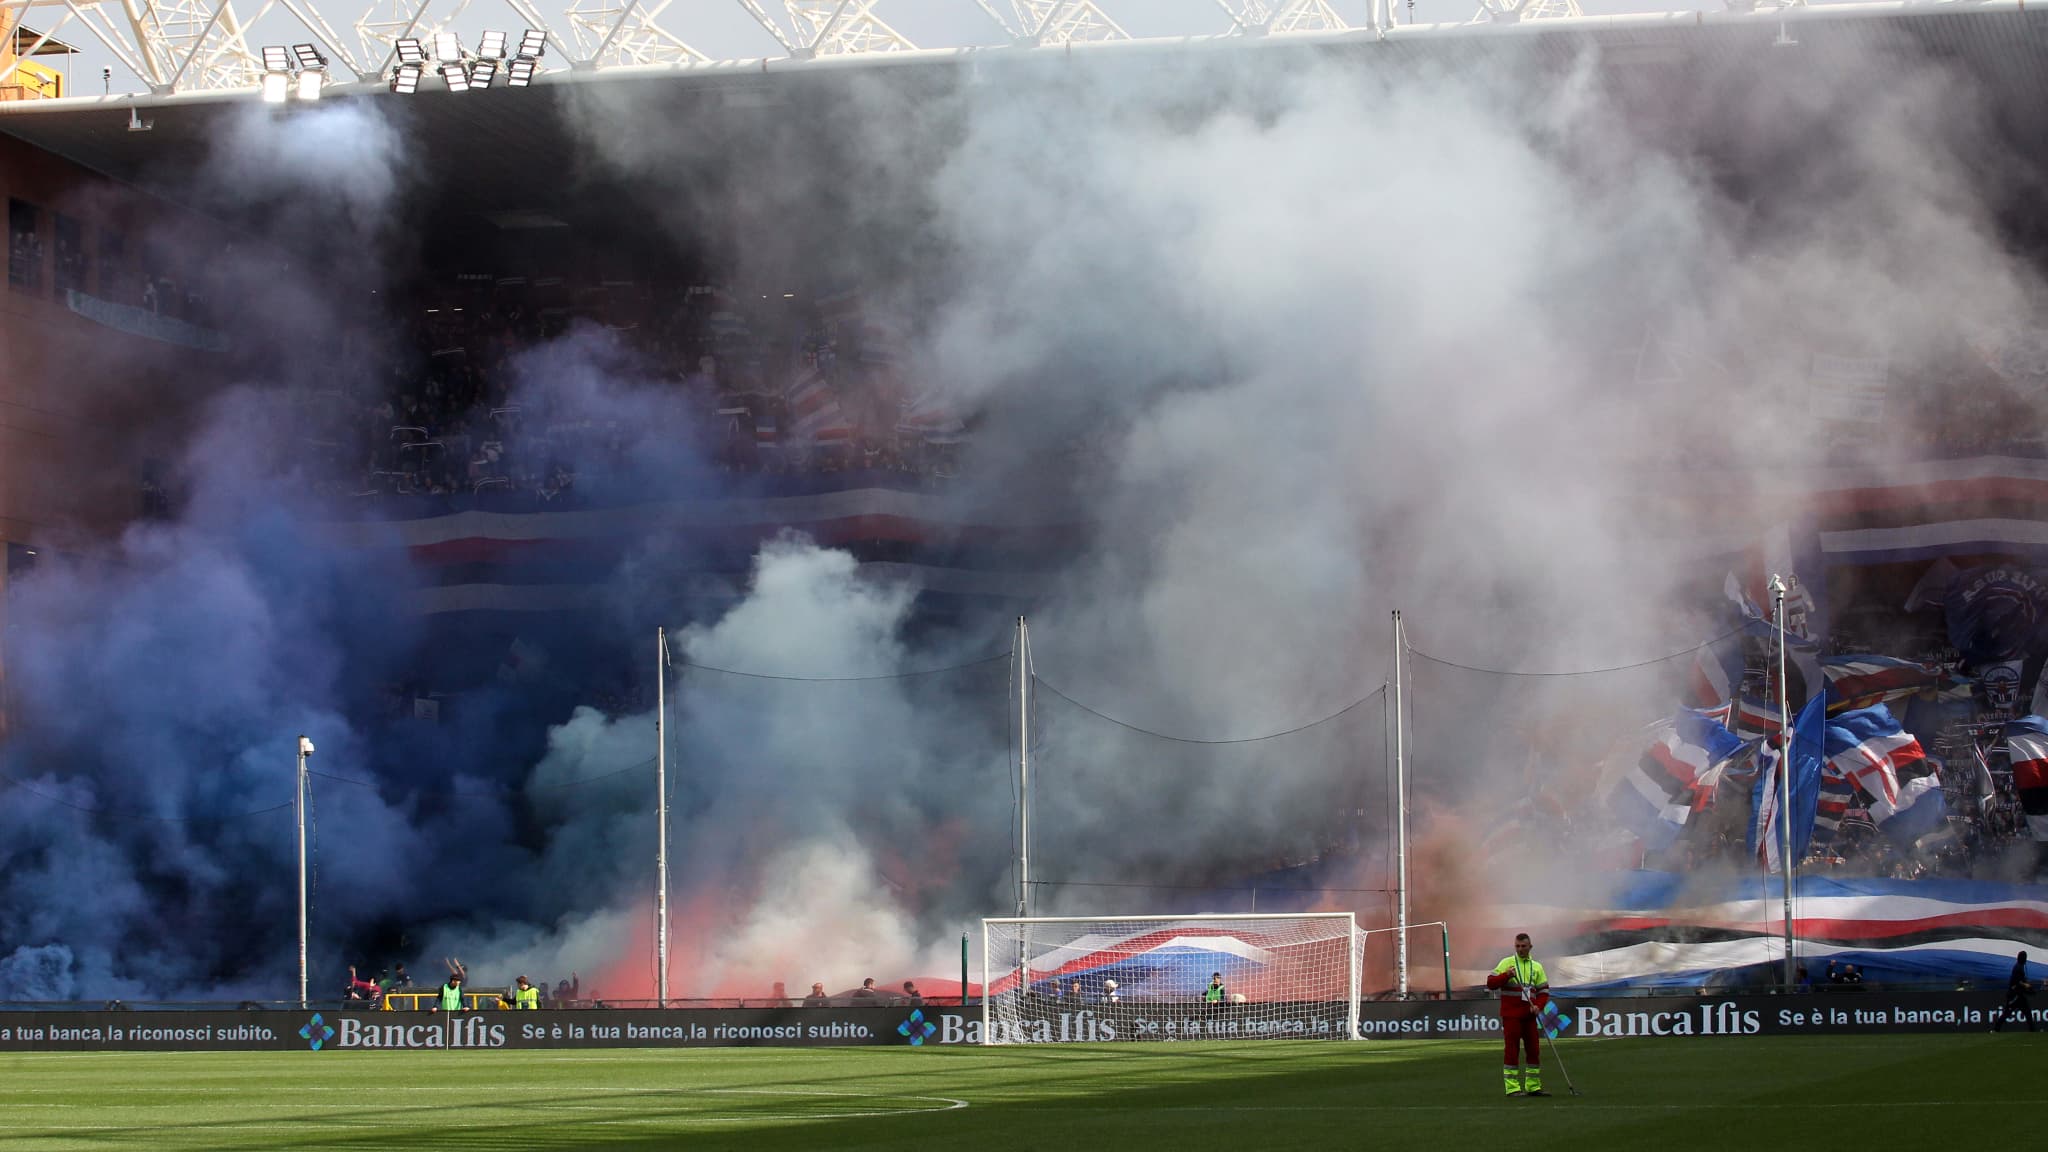 deudas, enfado de aficionados, resultados catastróficos… cómo la Sampdoria se hundió y ahora se enfrenta a la quiebra